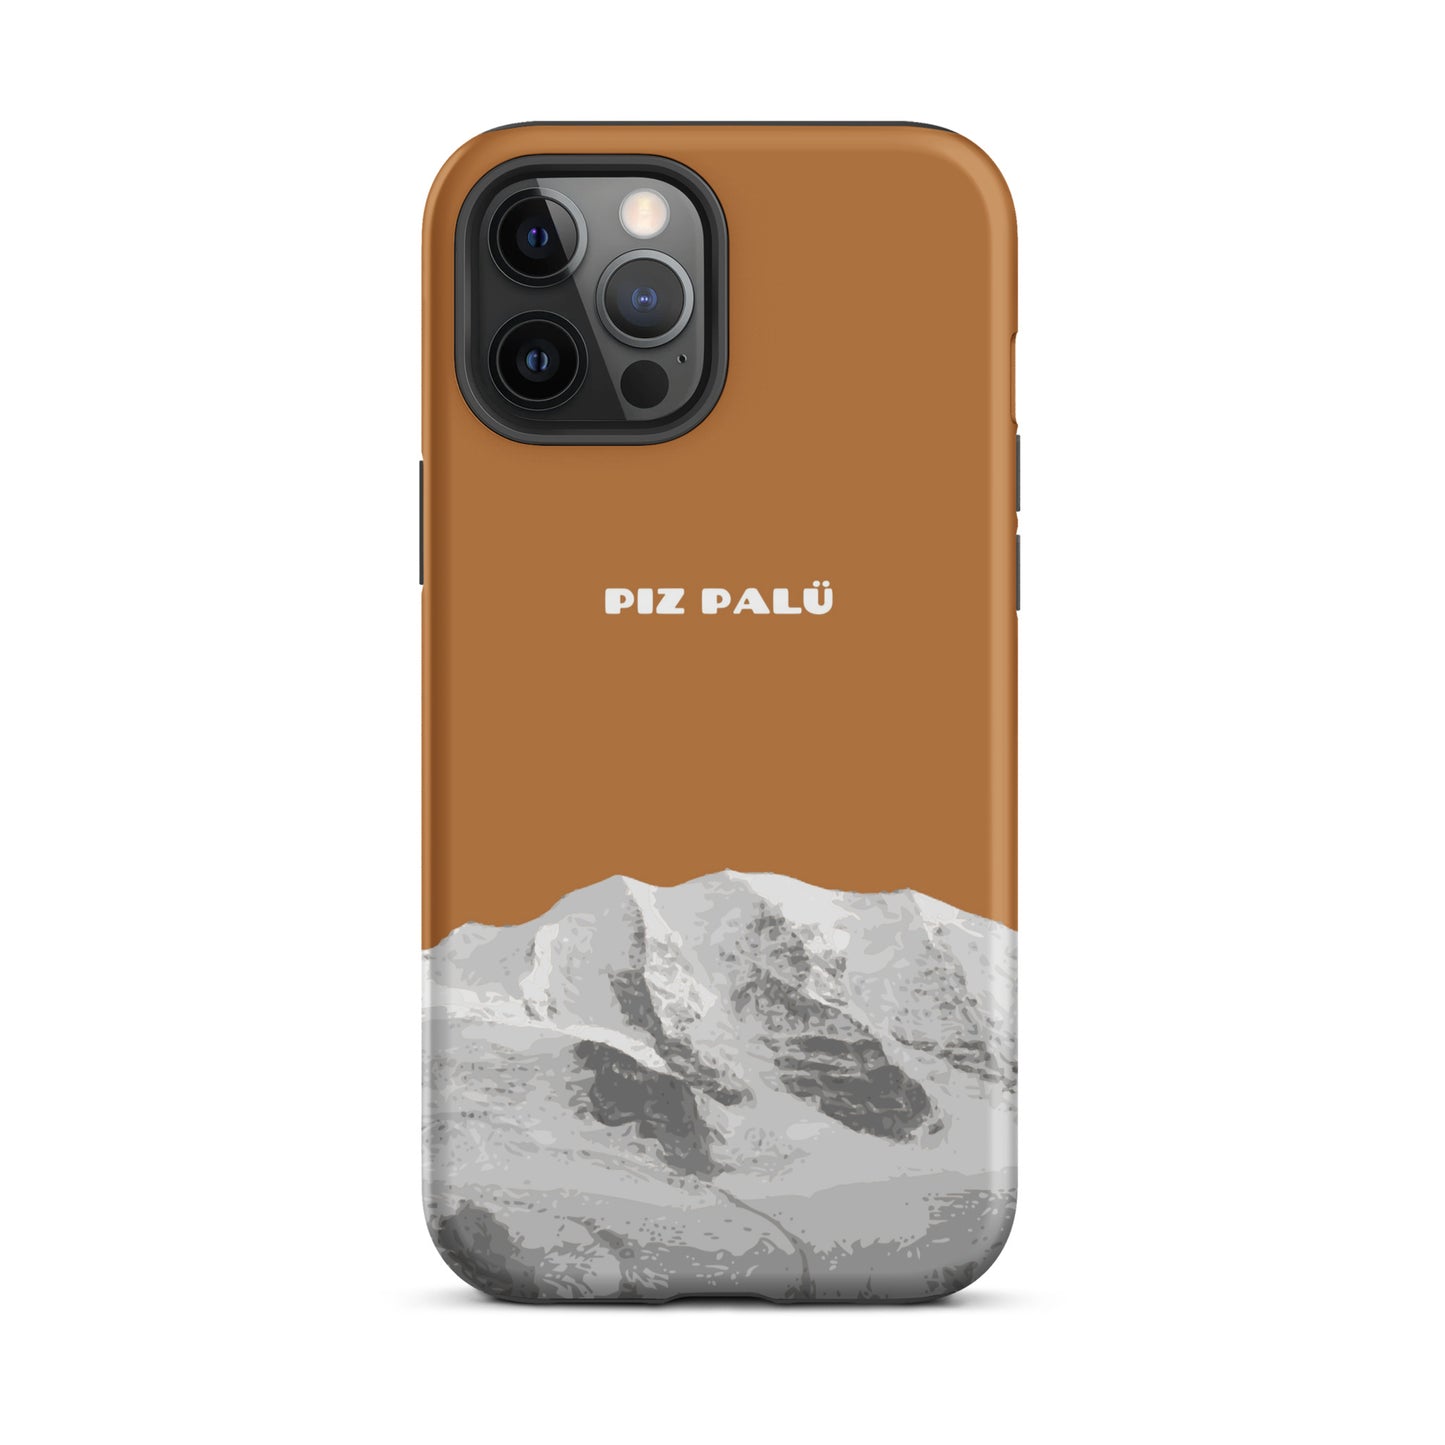 Hülle für das iPhone 12 Pro Max von Apple in der Farbe Kupfer, dass den Piz Palü in Graubünden zeigt.